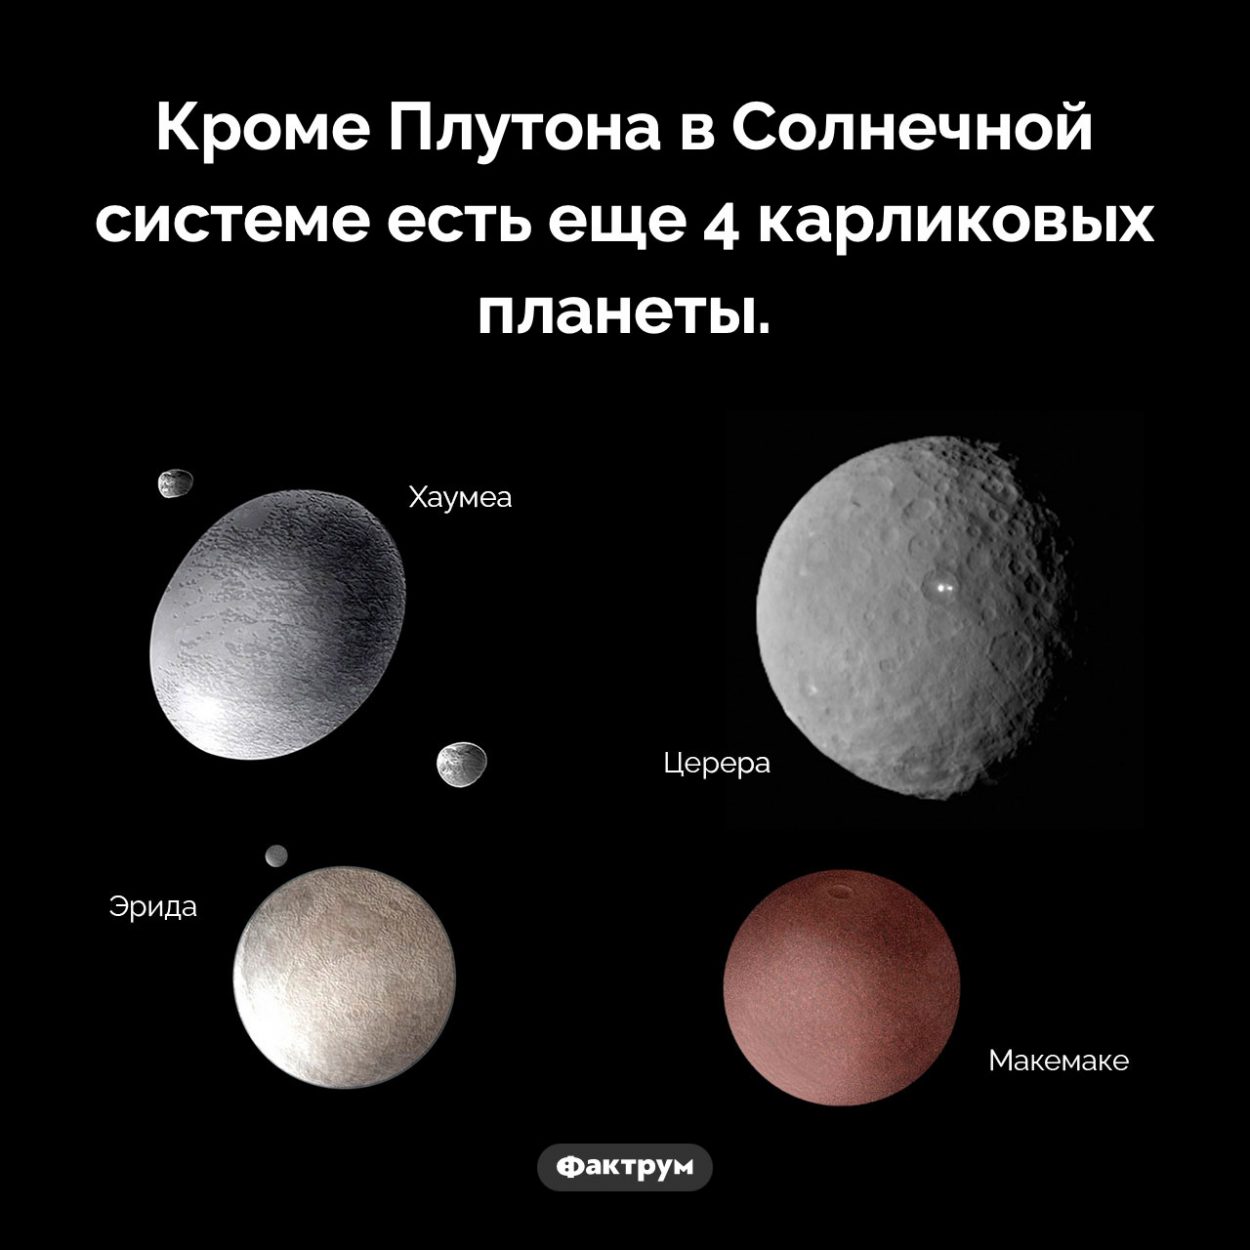 Карликовые планеты Солнечной системы. Кроме Плутона в Солнечной системе есть еще 4 карликовых планеты.